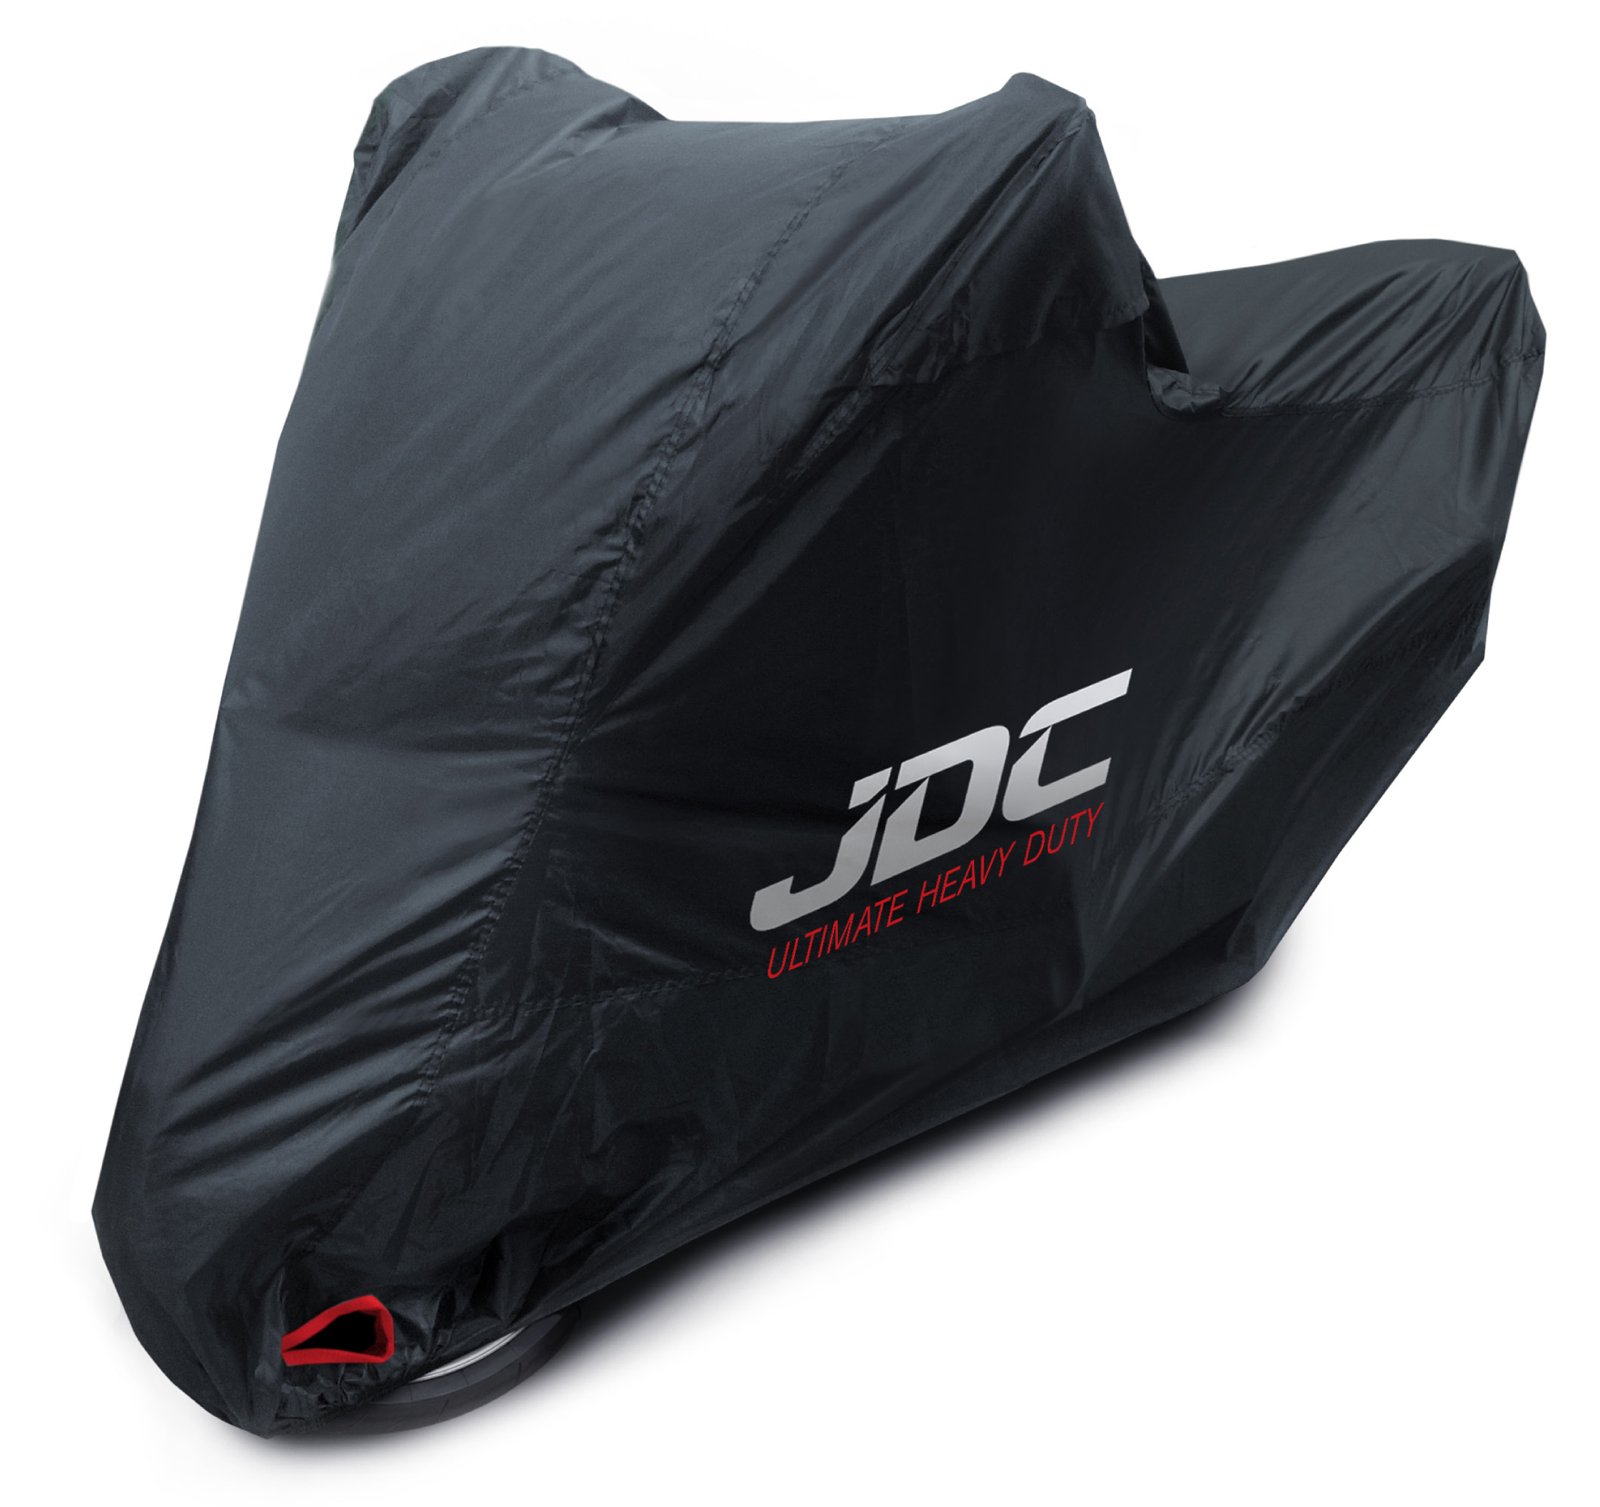 JDC 100% wasserdichte Motorradabdeckung - Ultimate Heavy Duty (Extra strapazierfähig, weiches Futter, hitzebeständig, verschweißte Nähte) - XL Top-Box von JDC